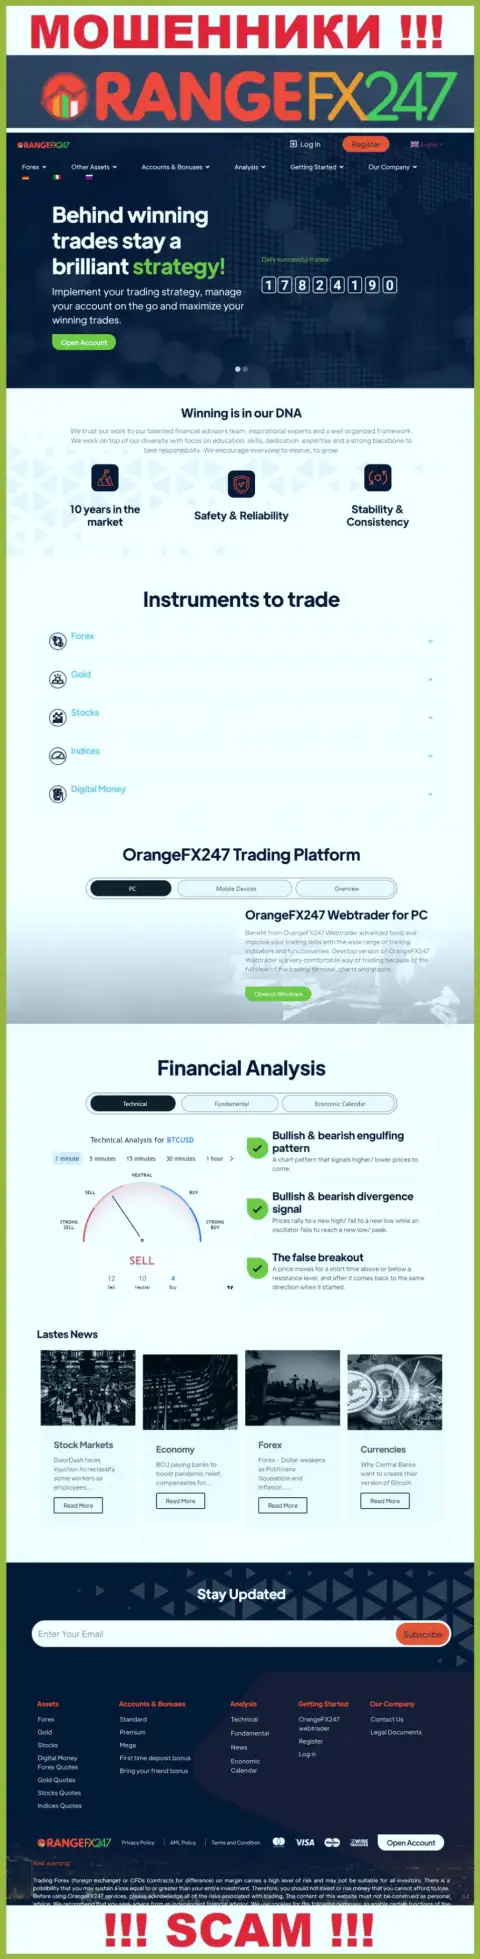 Главная страница официального онлайн-ресурса мошенников Orange FX 247